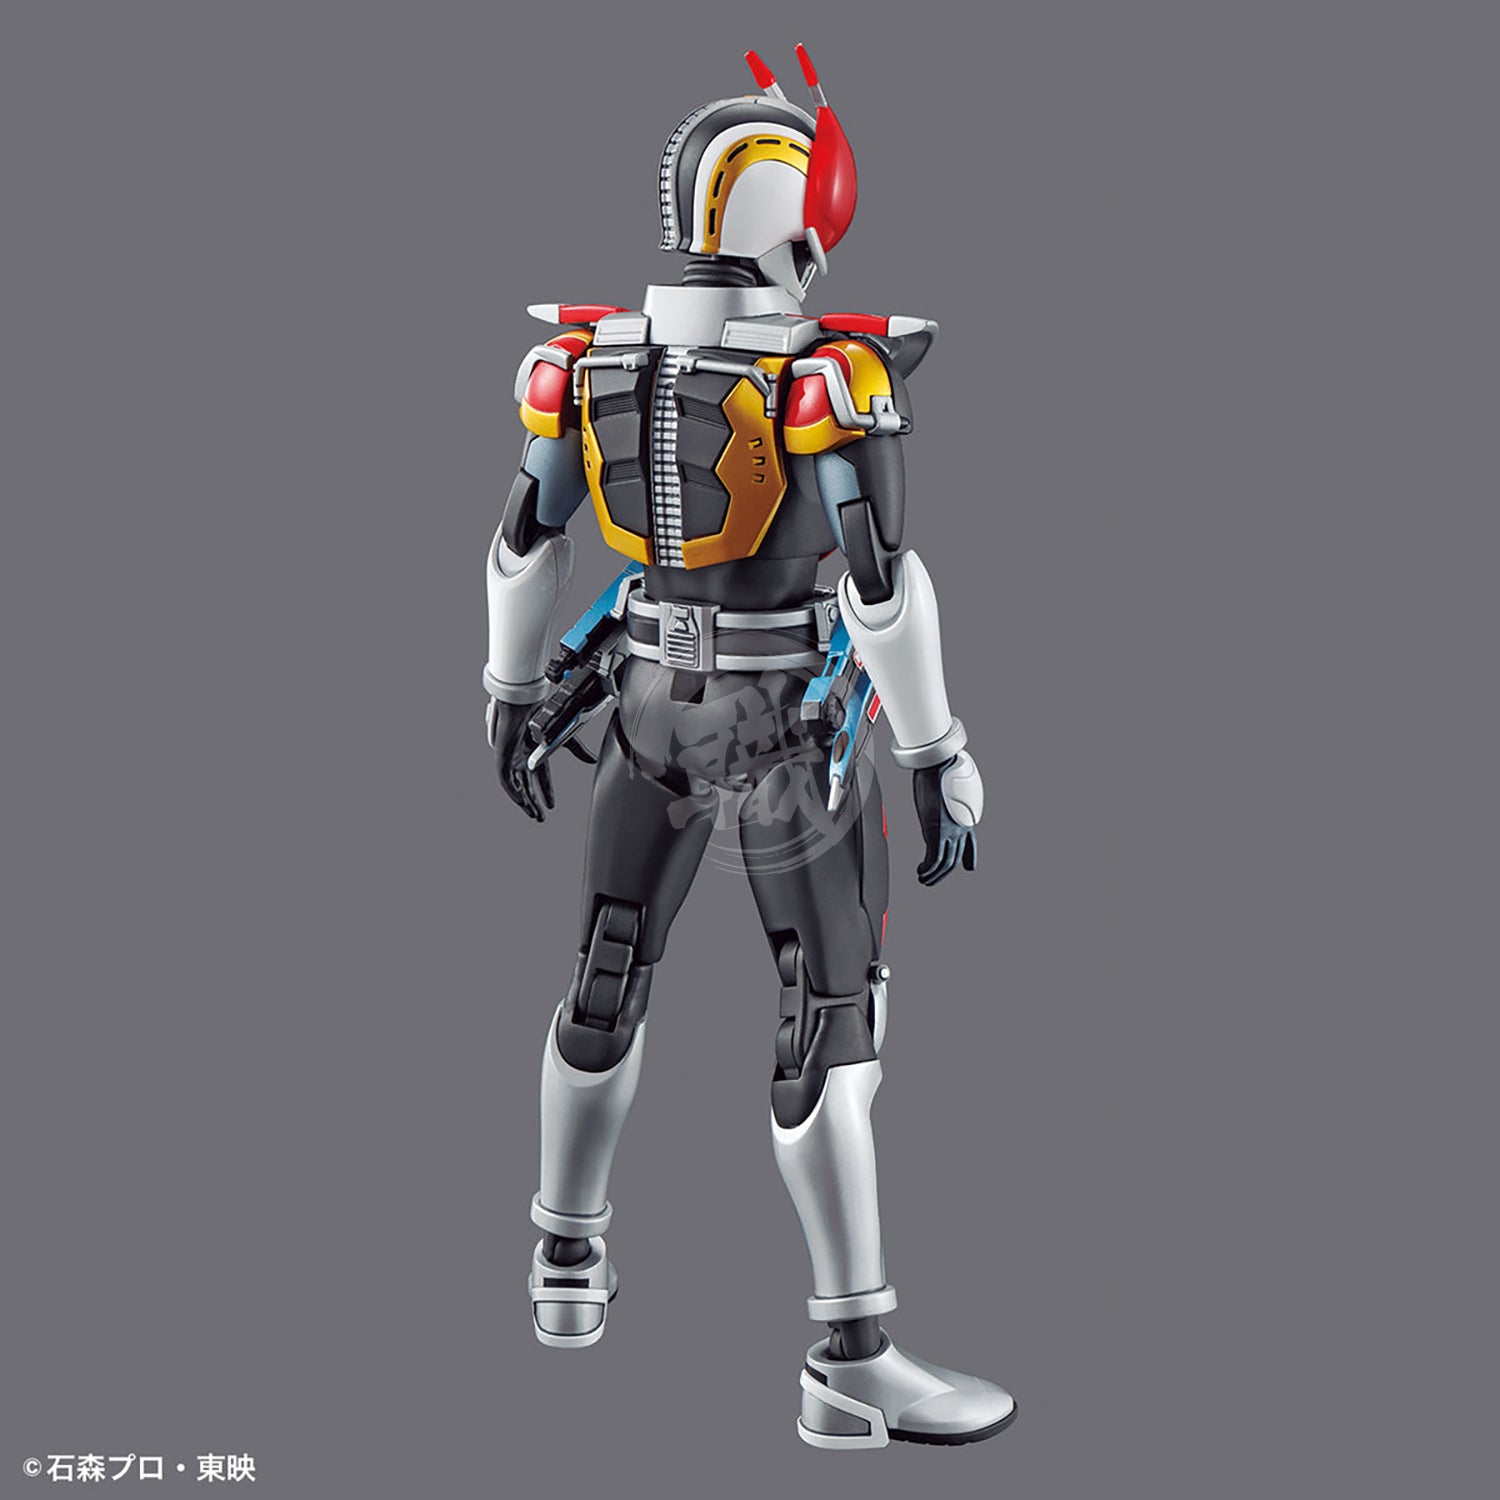 Figure-Rise Standard Masked Rider Den-O [Sword Form & Plat Form] - ShokuninGunpla